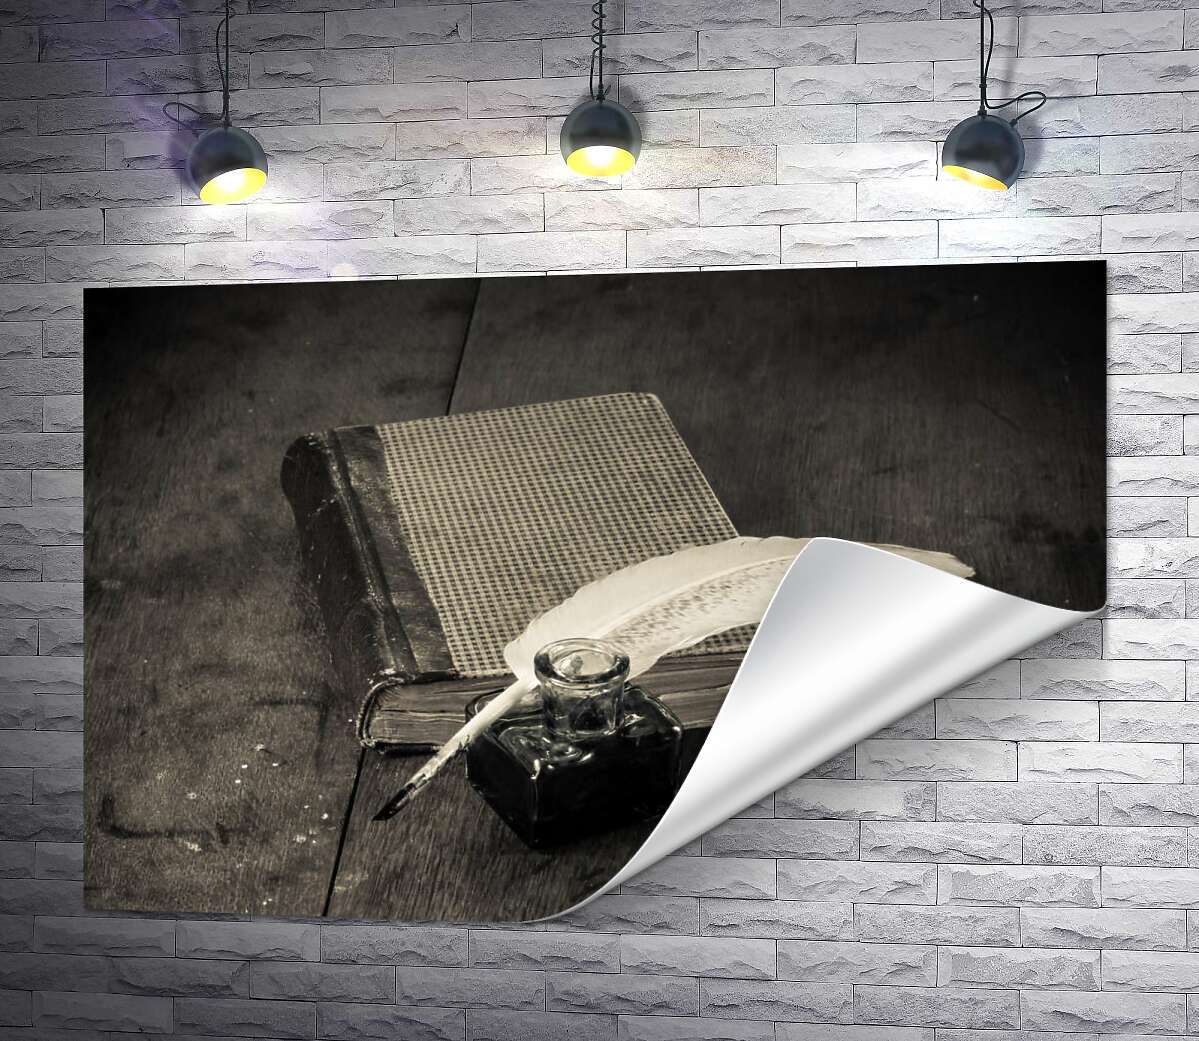 друк Елегантне біле перо лежить на старій книзі поряд зі скляною чорнильницею